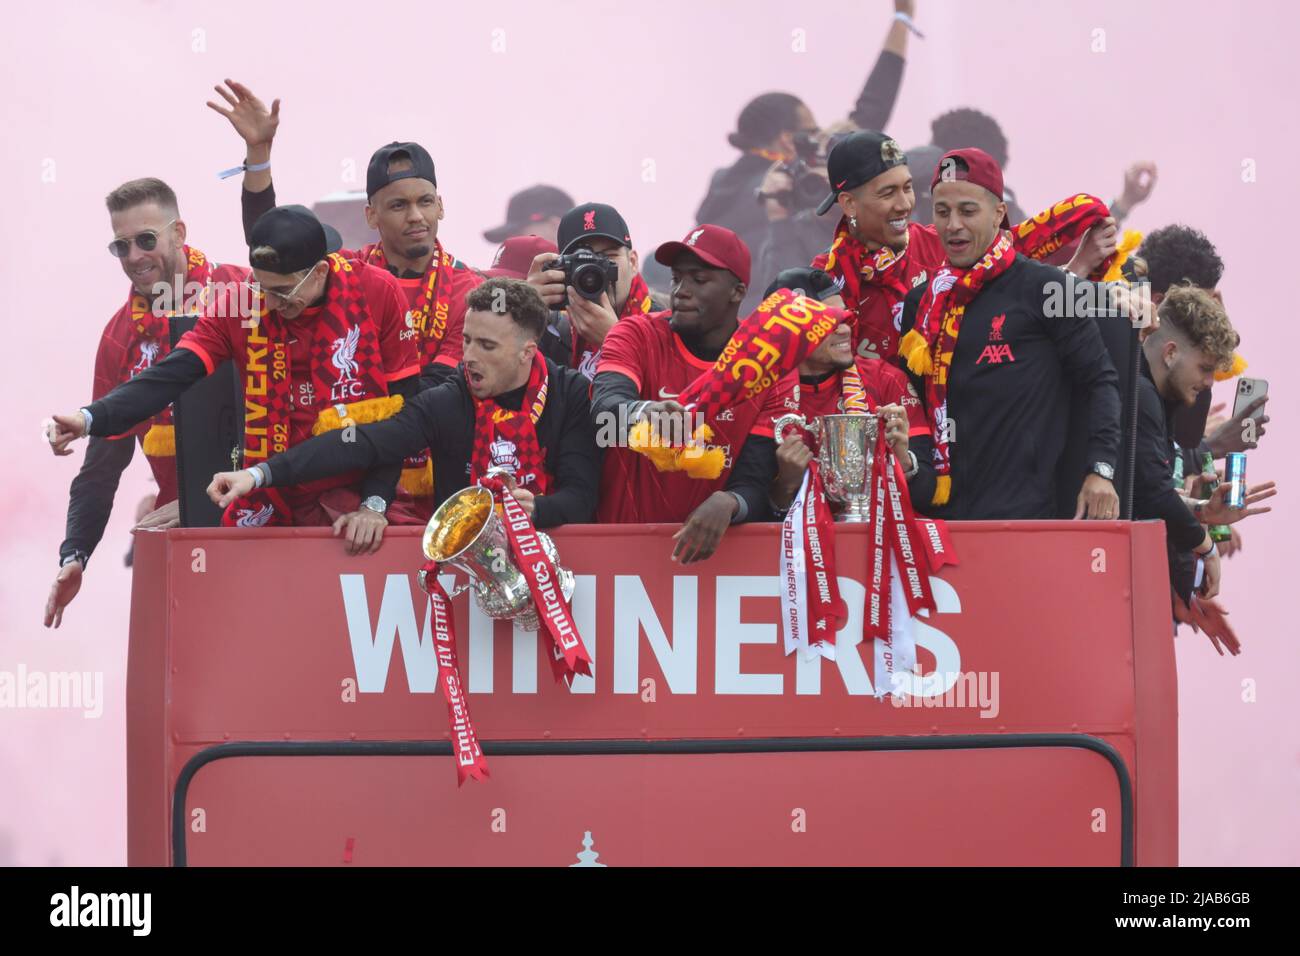 La squadra del Liverpool FC festeggia durante la sfilata di autobus open top attraverso la città con i tifosi dopo aver vinto sia la Carabao Cup che la fa Cup nella stagione 2021/22 Foto Stock